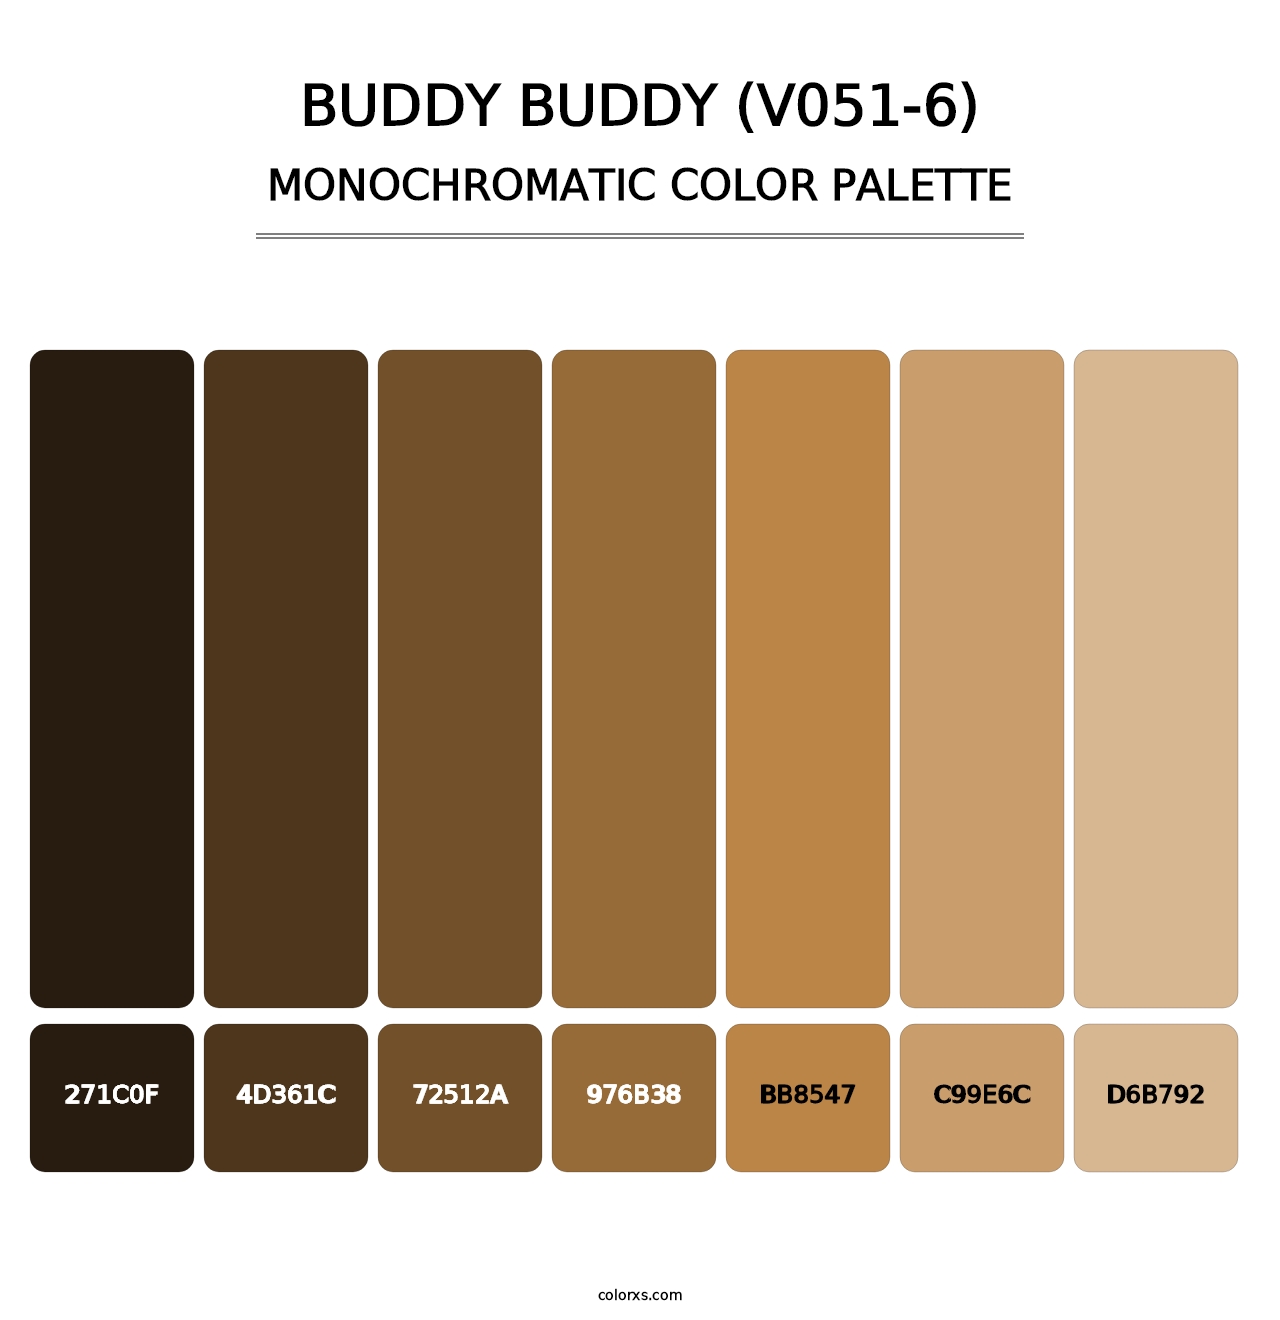 Buddy Buddy (V051-6) - Monochromatic Color Palette